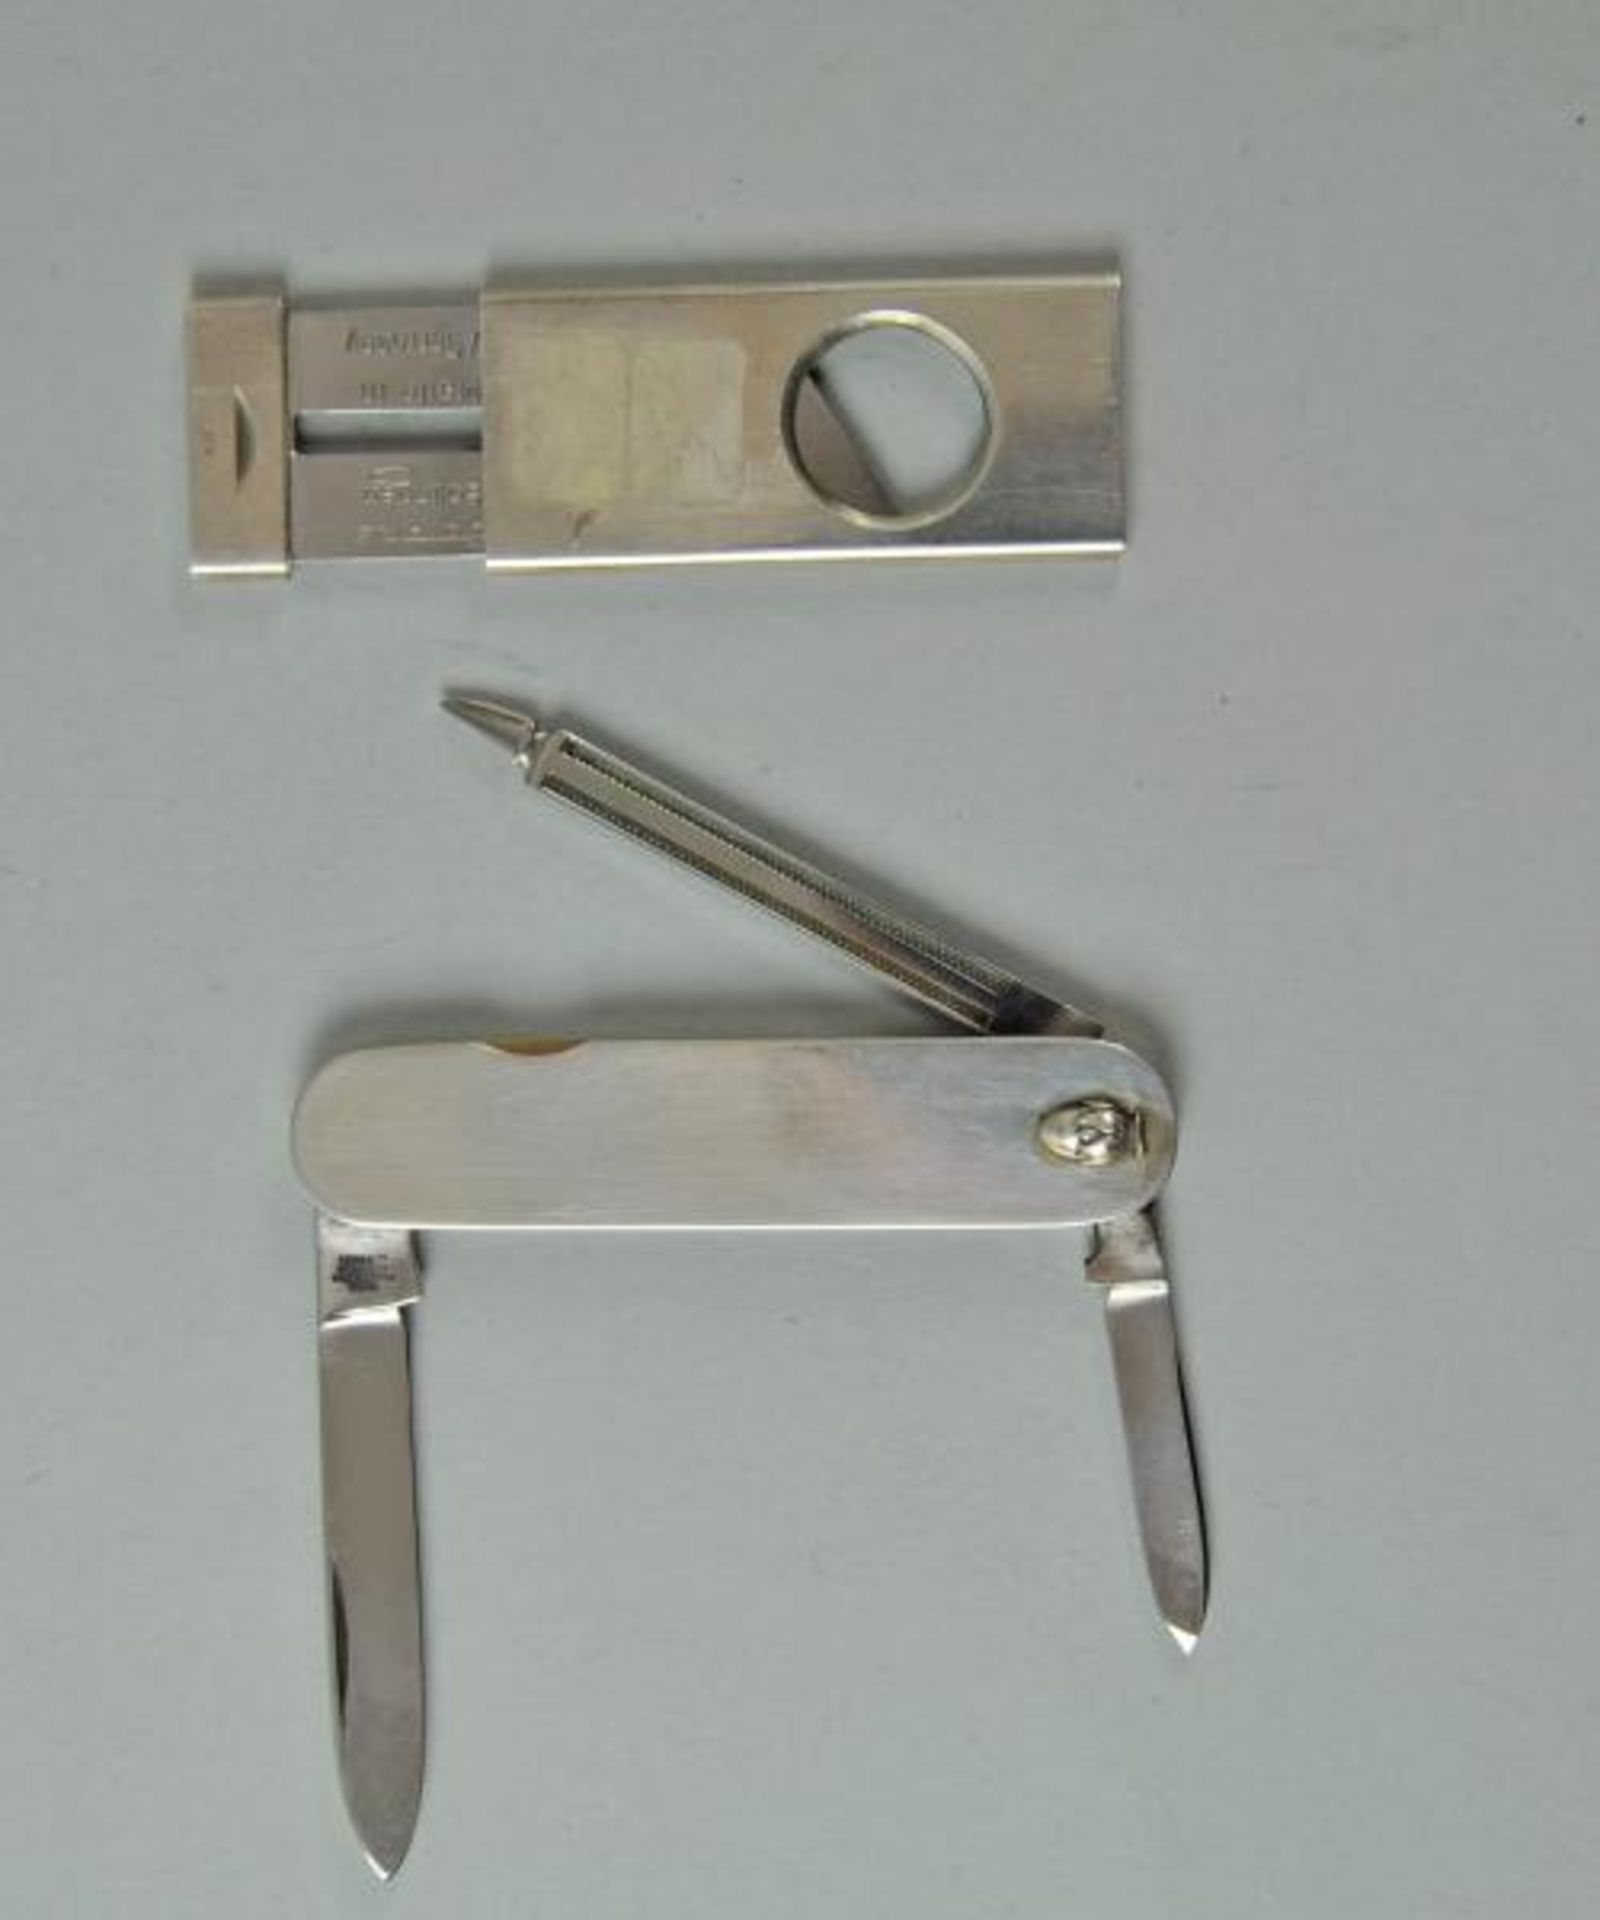 ZIGARRENABSCHNEIDER u. TASCHENMESSER mit kleinem Pinienrelief, 2 Messer u. Feile, Silber, L 7cm(